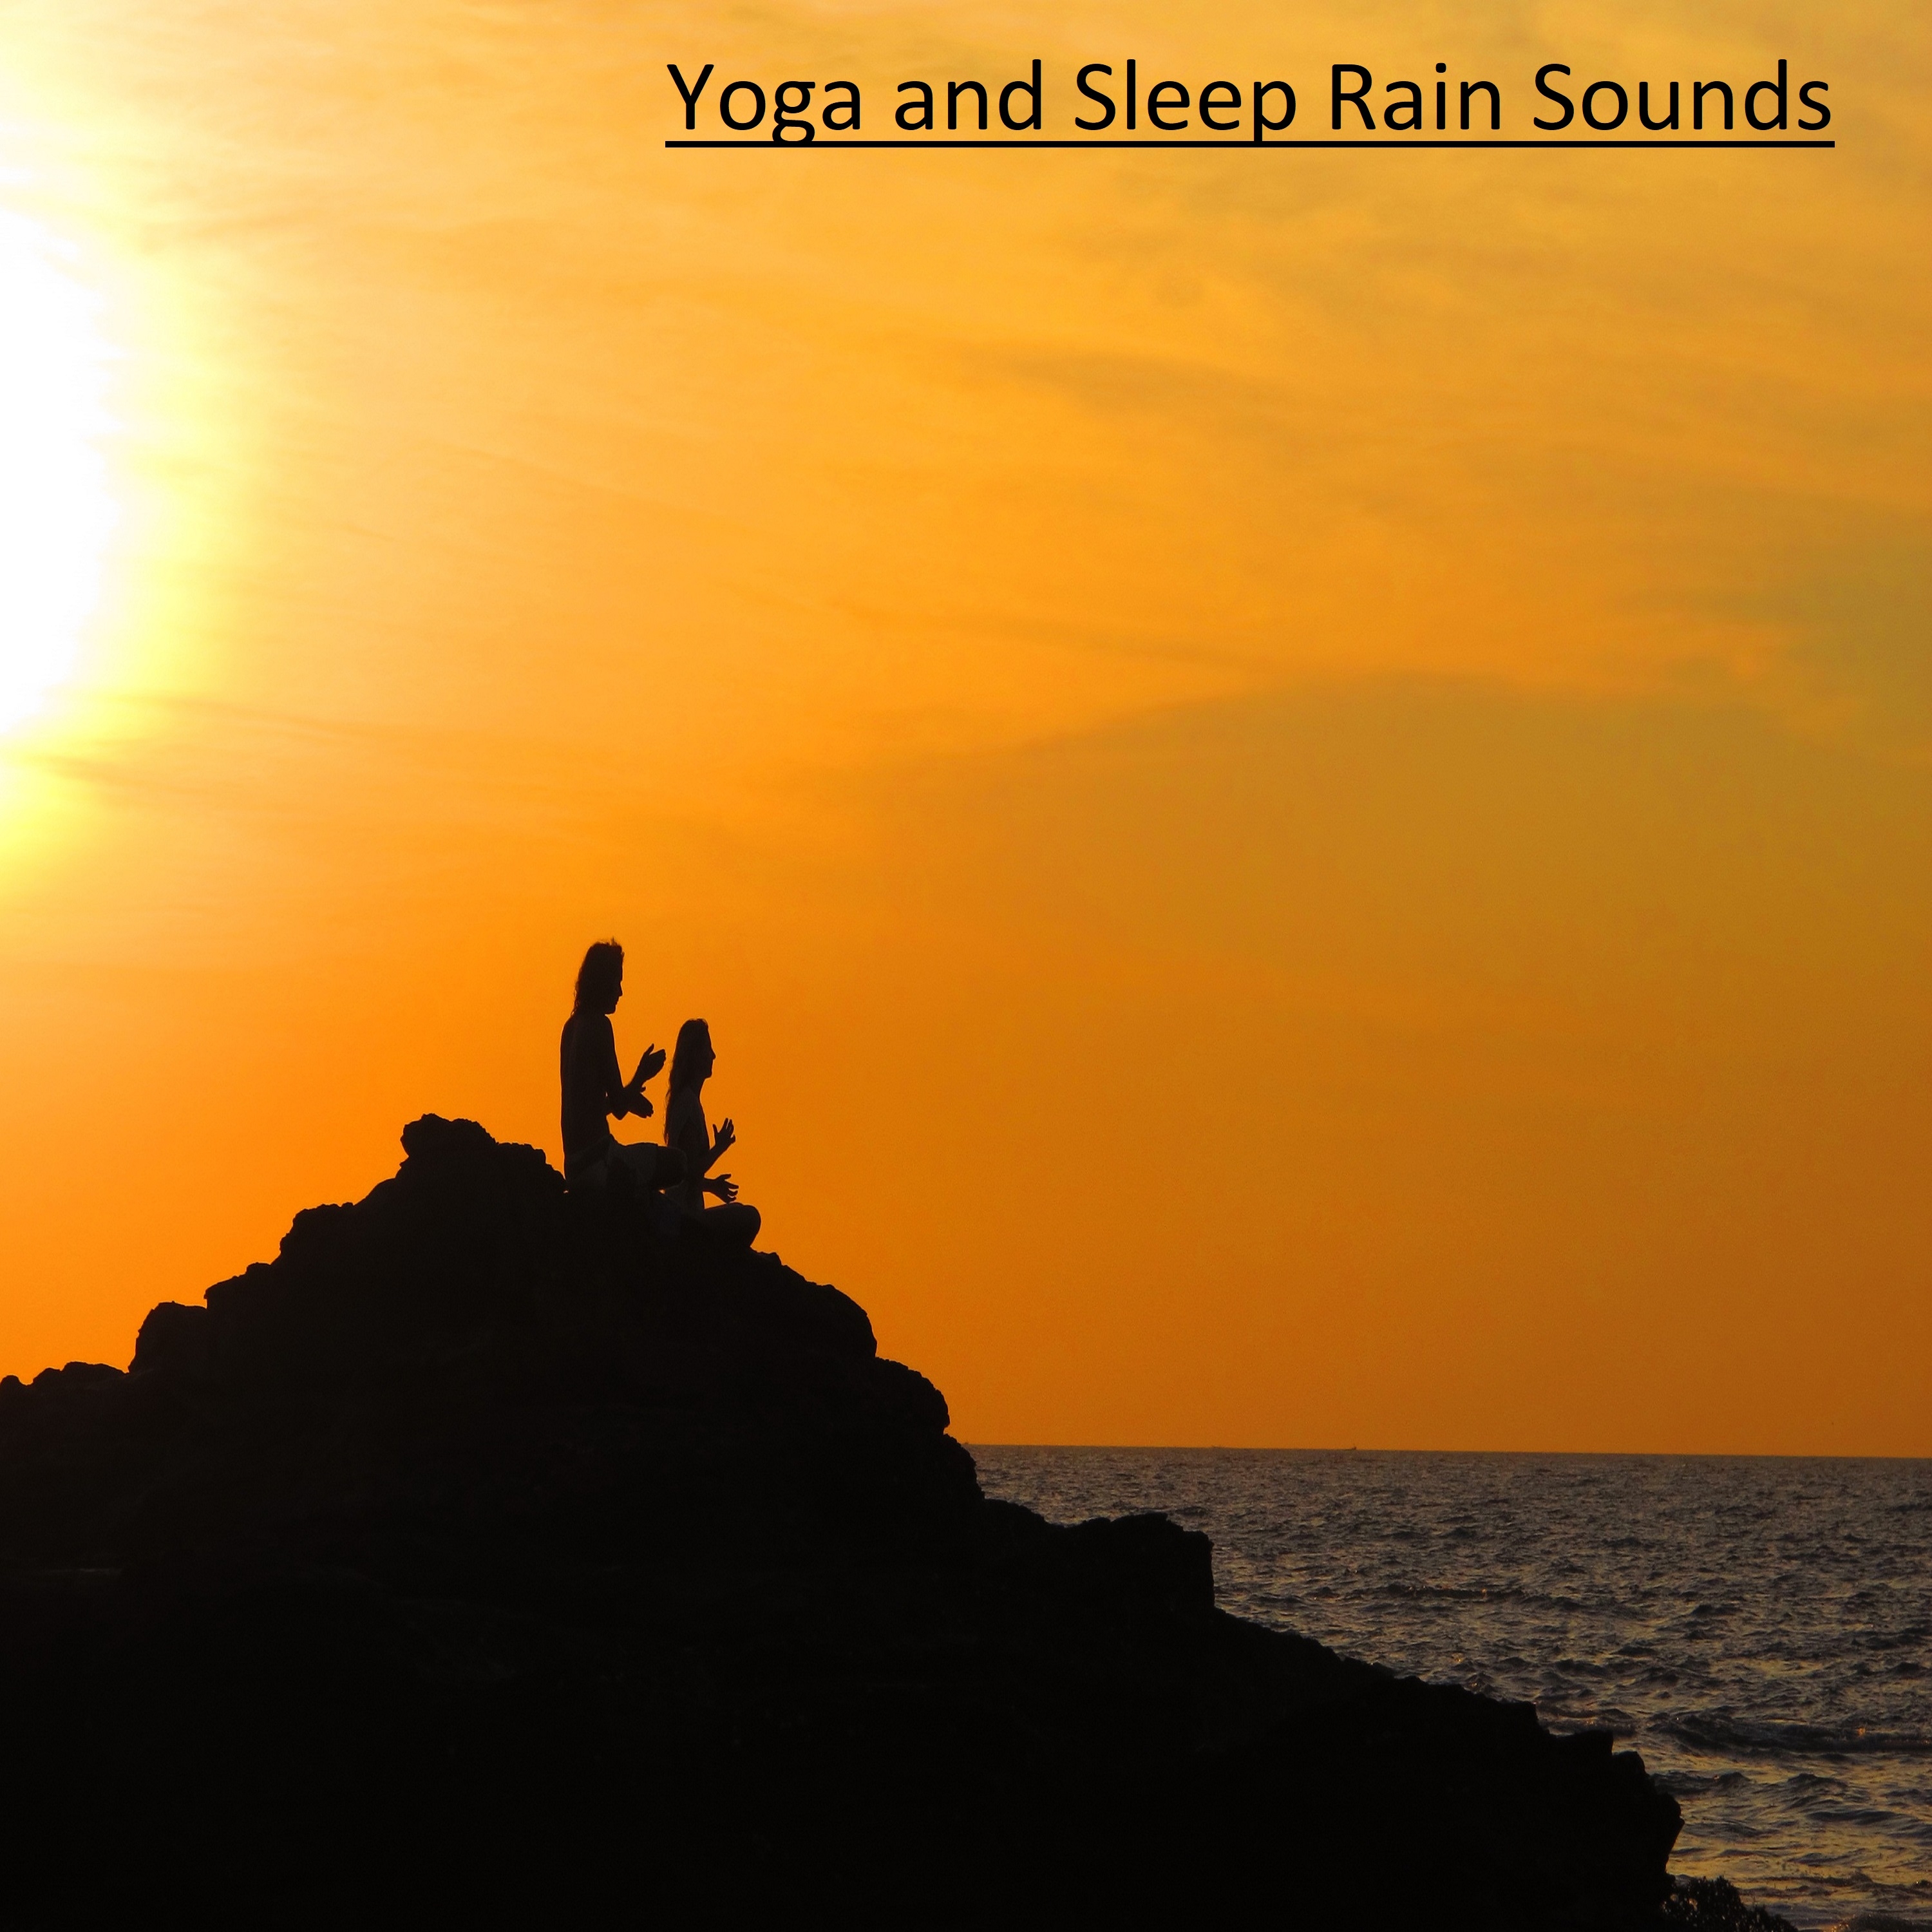 17 Yoga and Sleep Rain Sounds